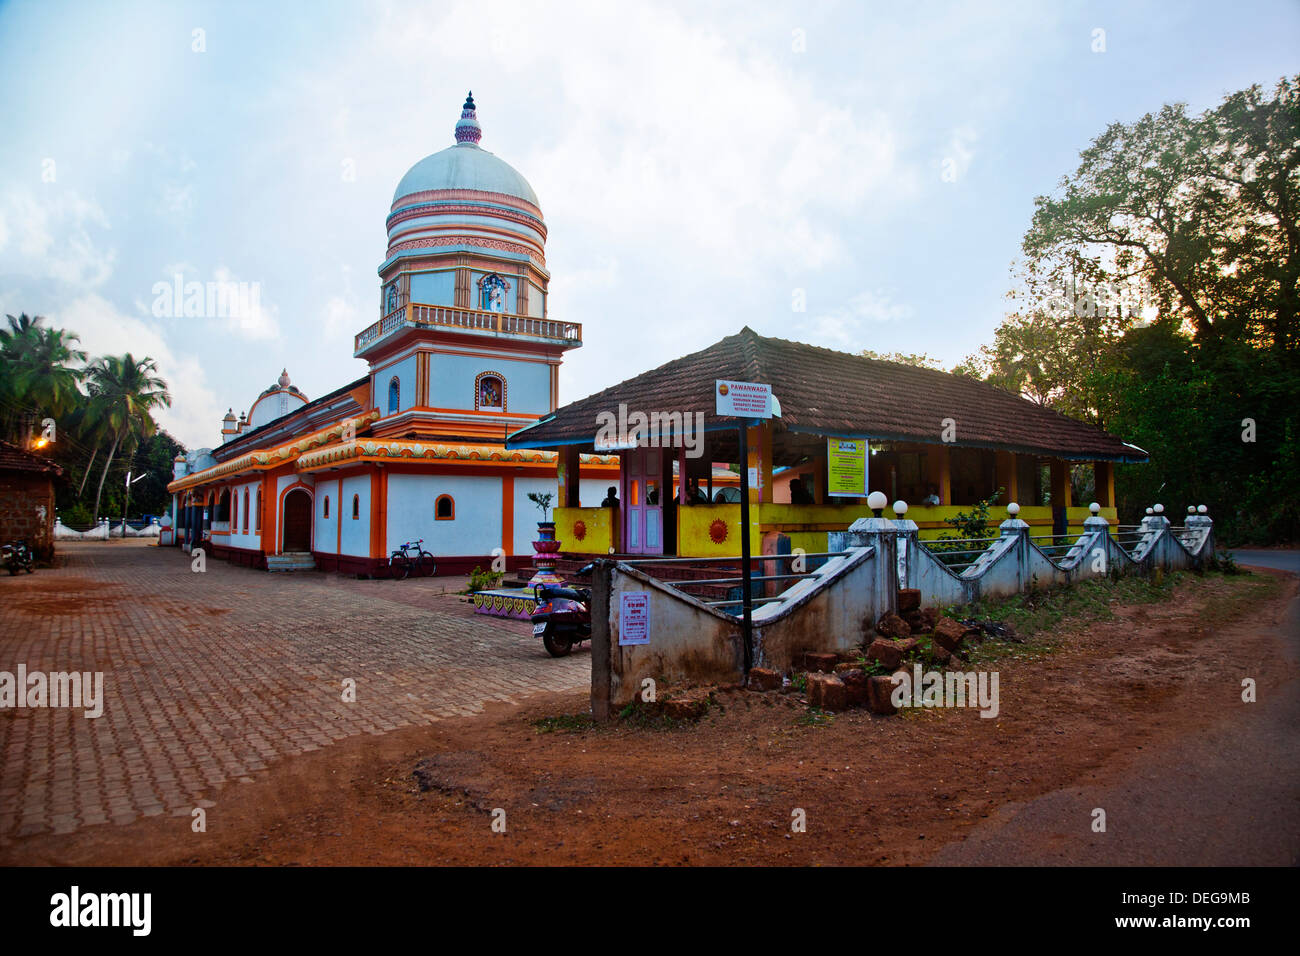 Facade of a temple, Panaji, Goa, India Stock Photo